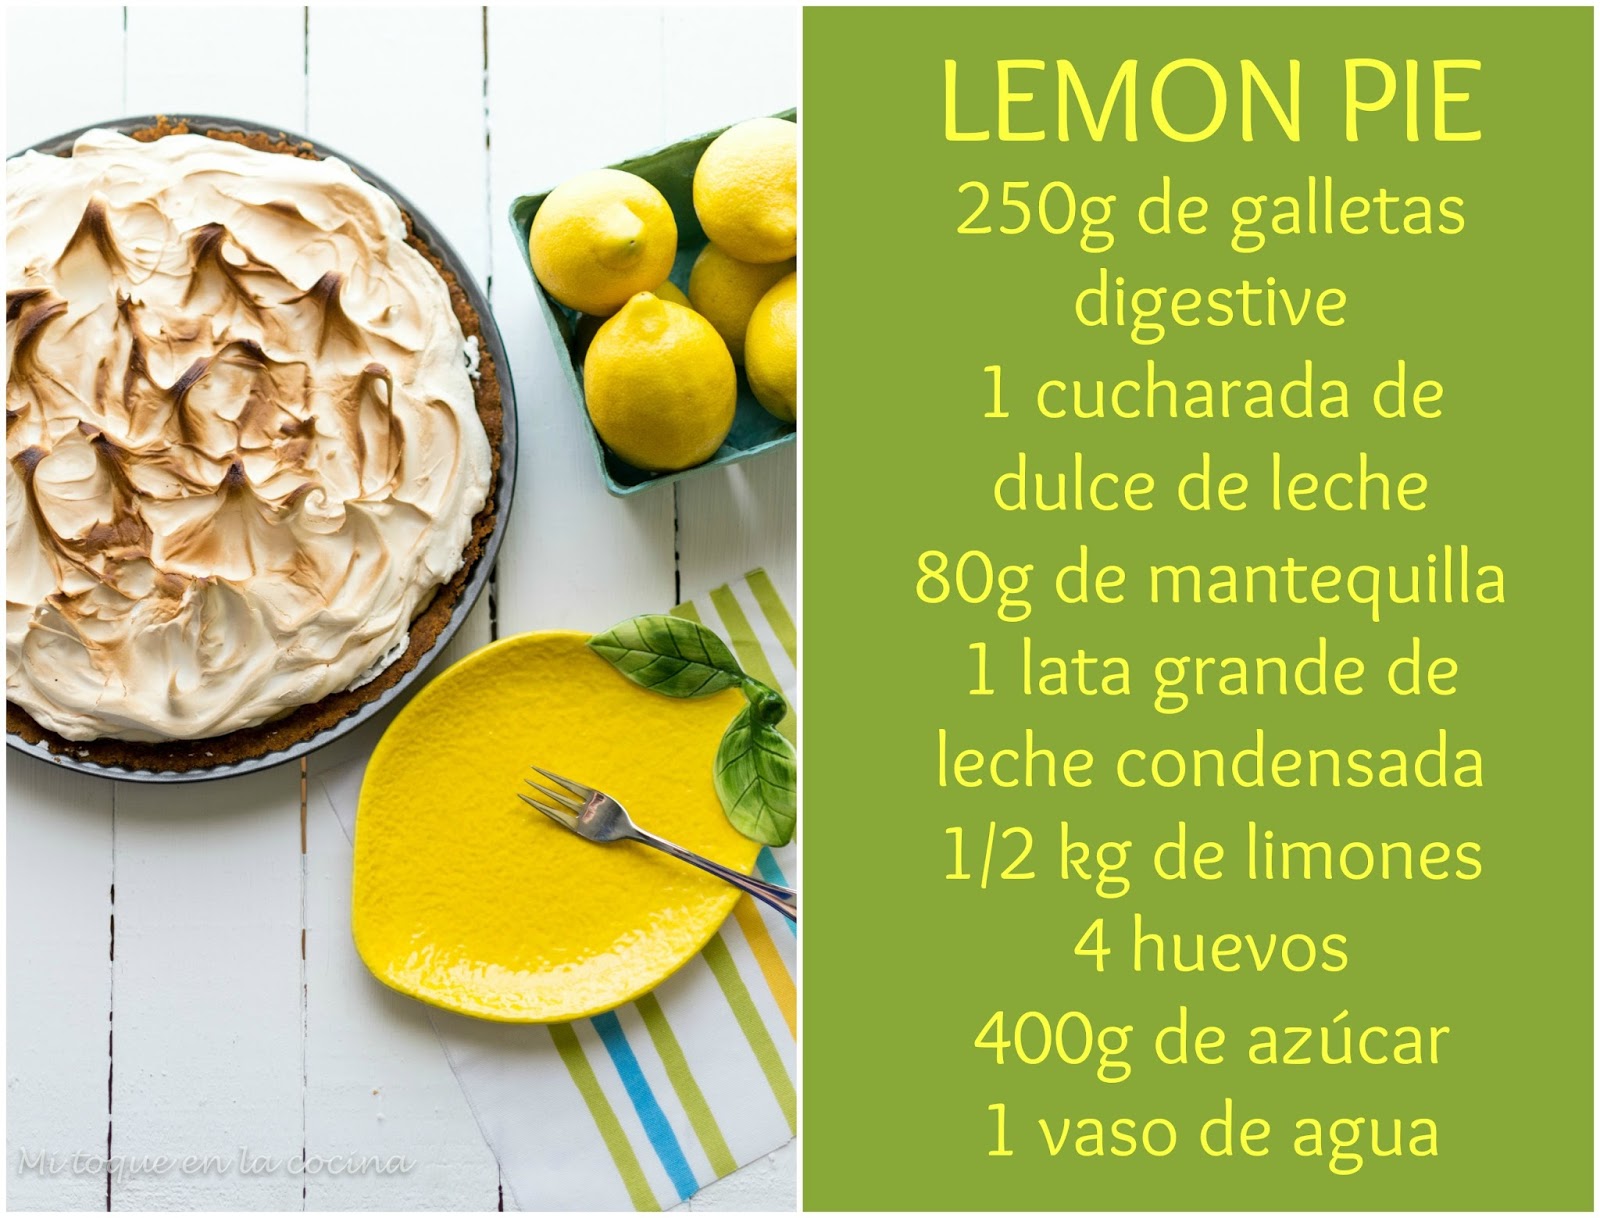 Mi toque en la cocina: Lemon pie